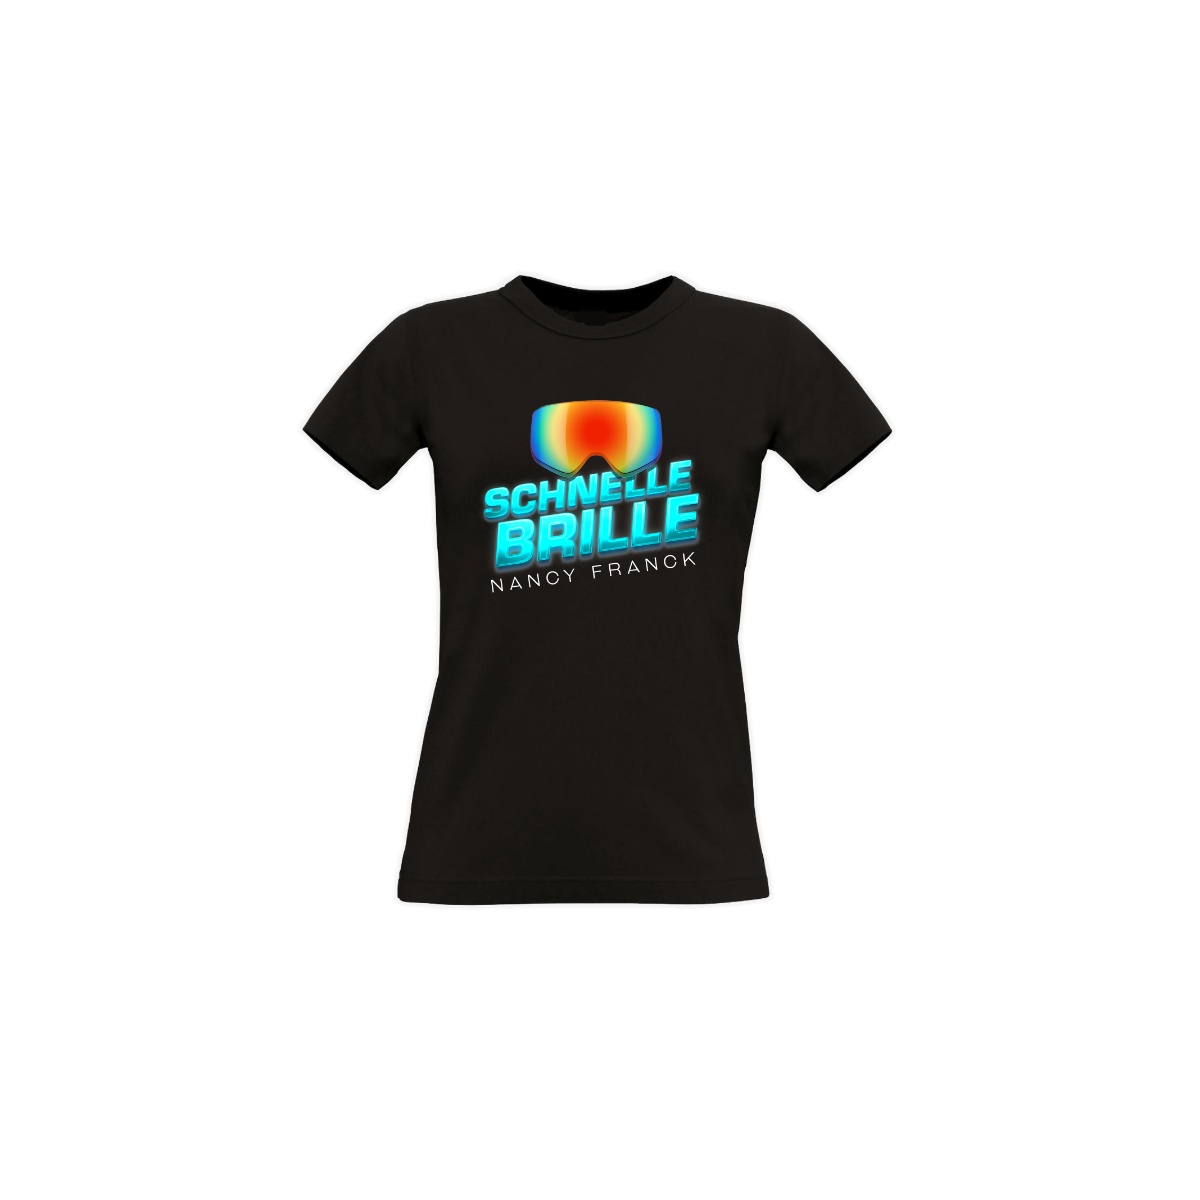 Girly-Shirt "SCHNELLE BRILLE" schwarz